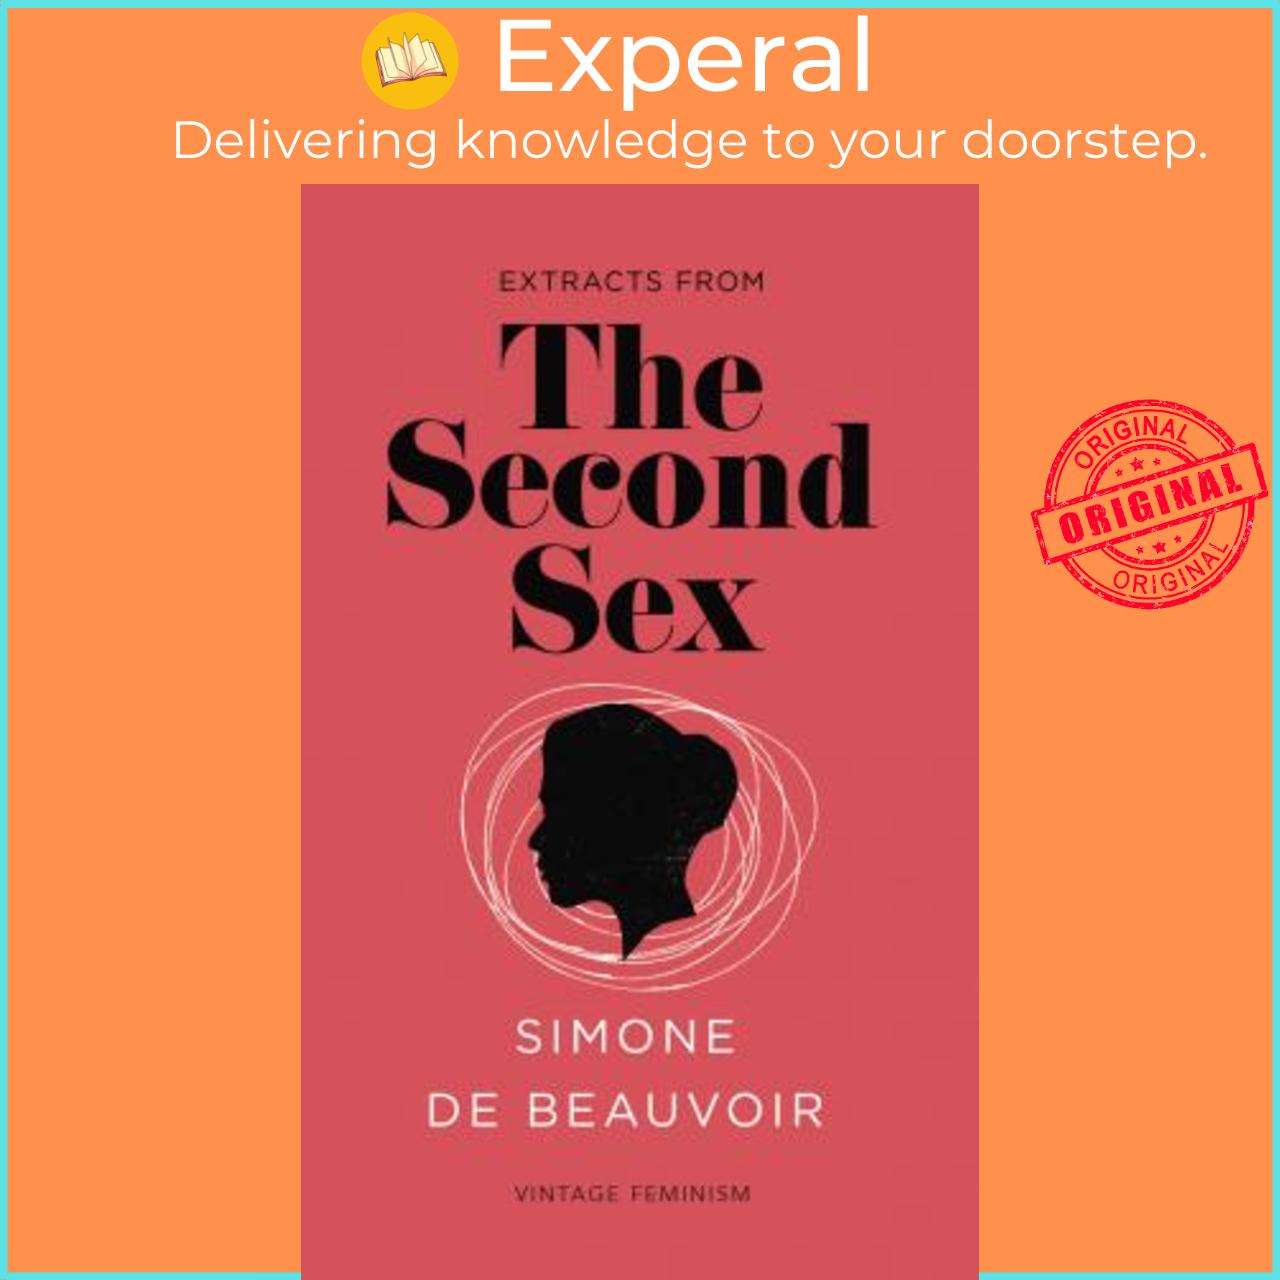 Sách - The Second Sex (Vintage Feminism Short Edition) by Simone de Beauvoir (UK edition, paperback)